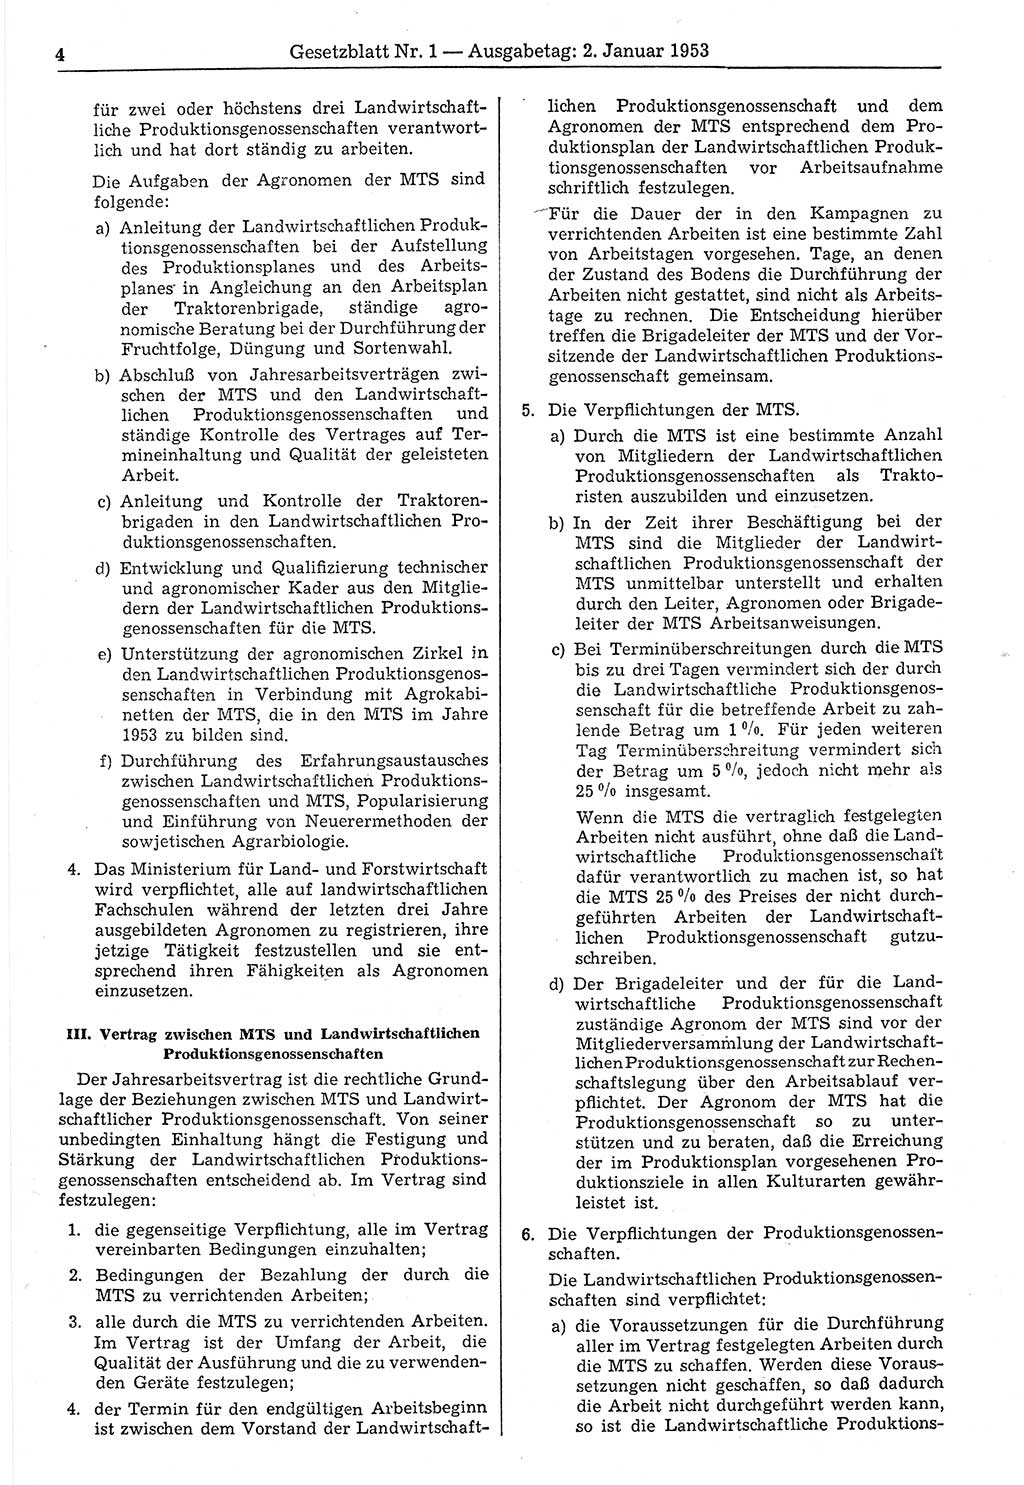 Gesetzblatt (GBl.) der Deutschen Demokratischen Republik (DDR) 1953, Seite 4 (GBl. DDR 1953, S. 4)